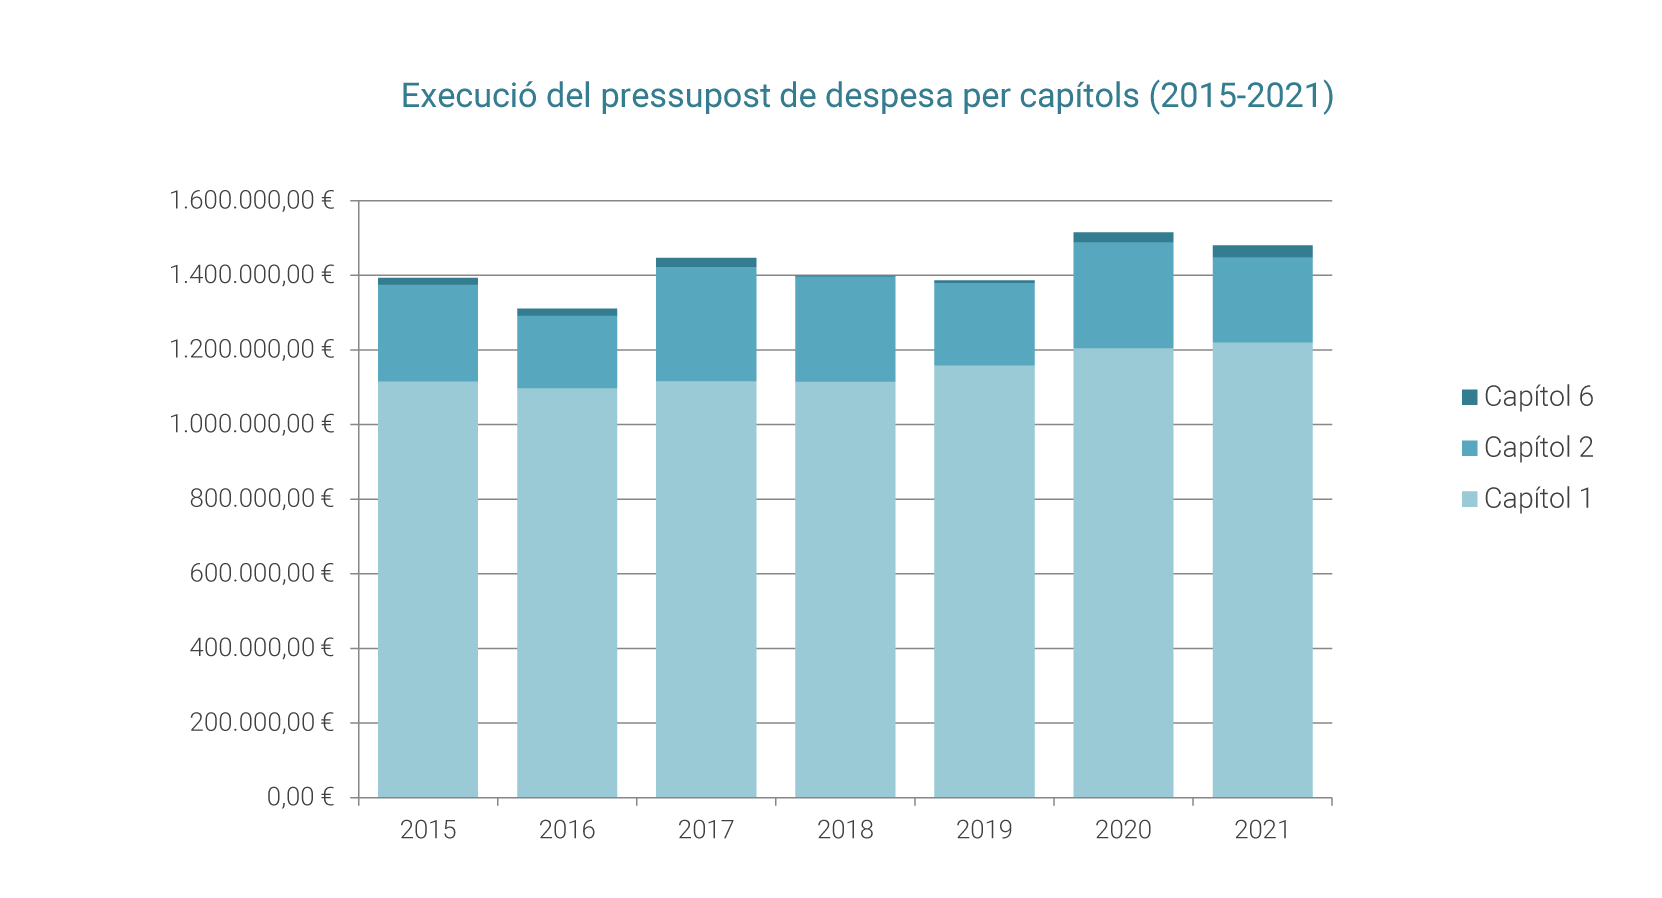 Execució del pressupost de despesa per capítols (2015-2021)